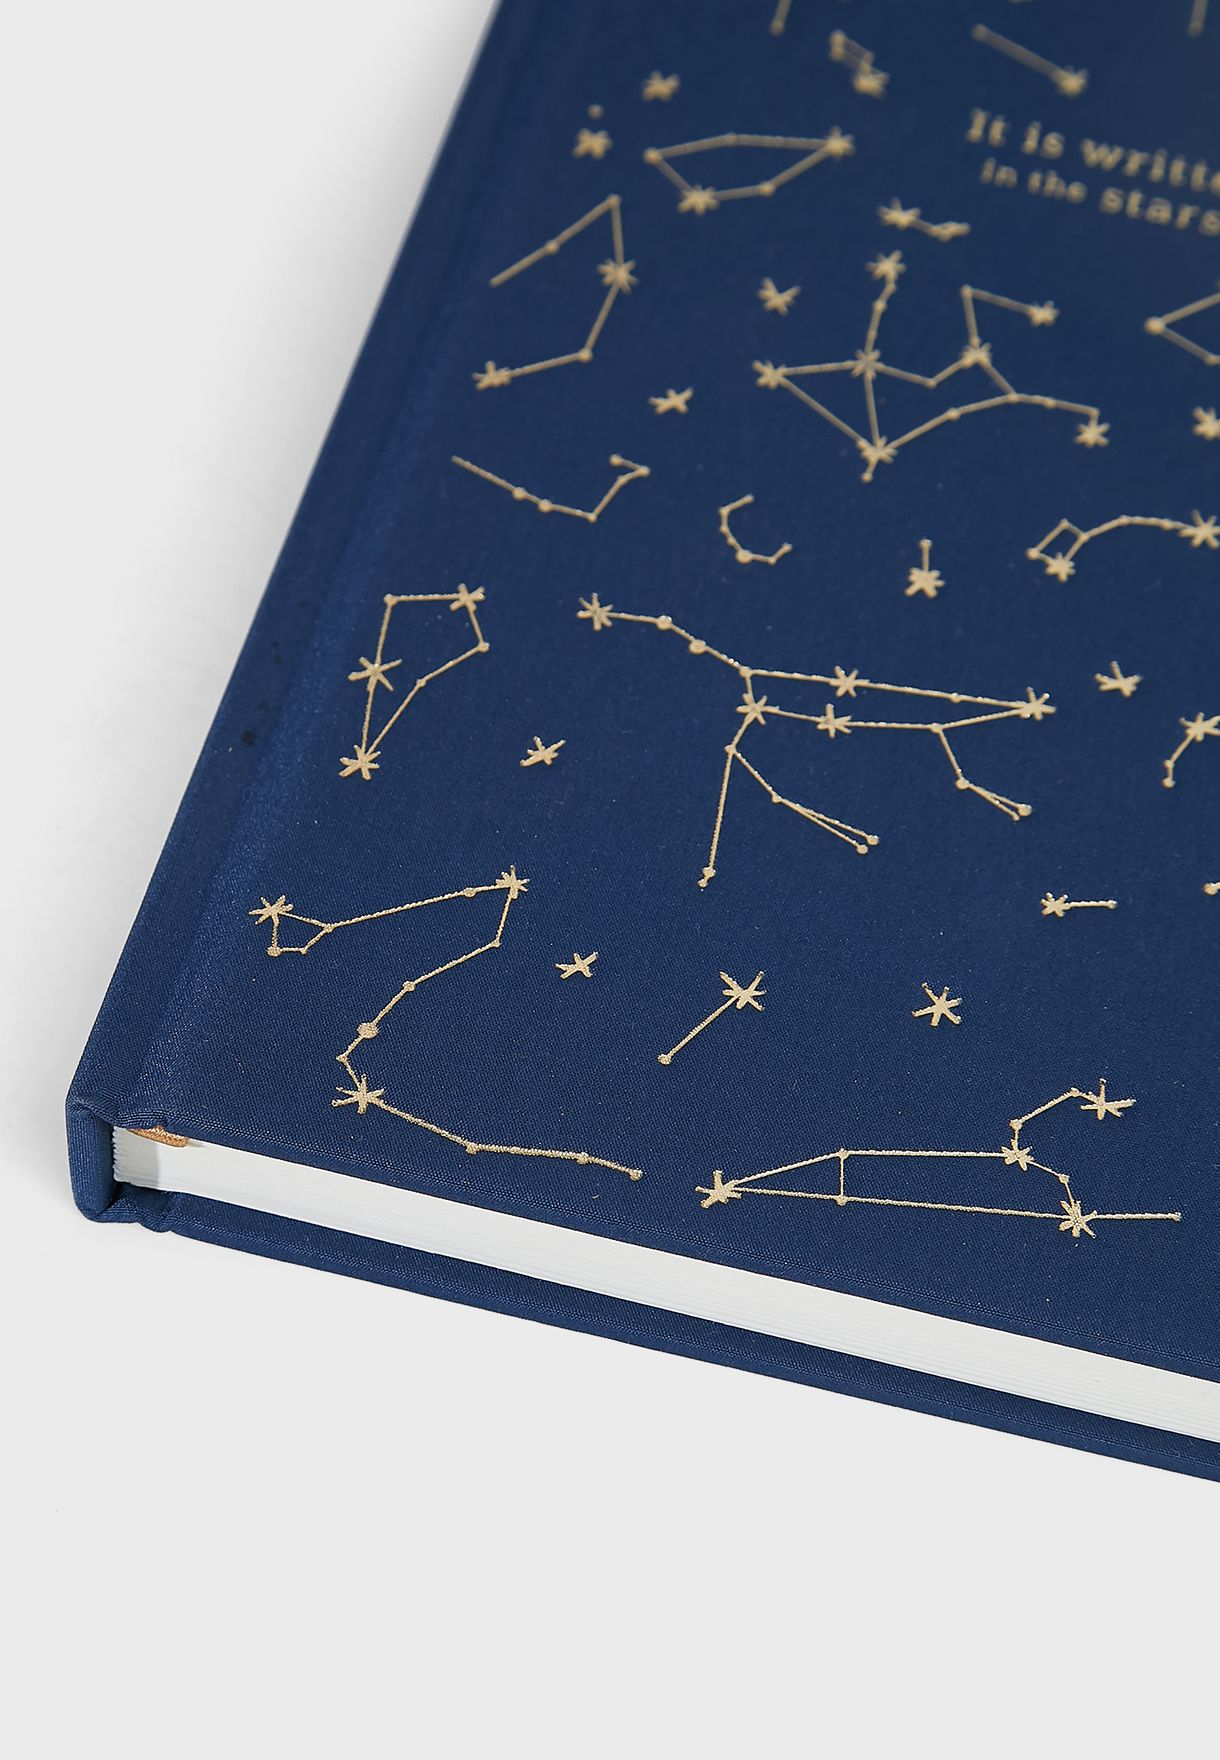 دفتر يوميات بتشكيلات النجوم